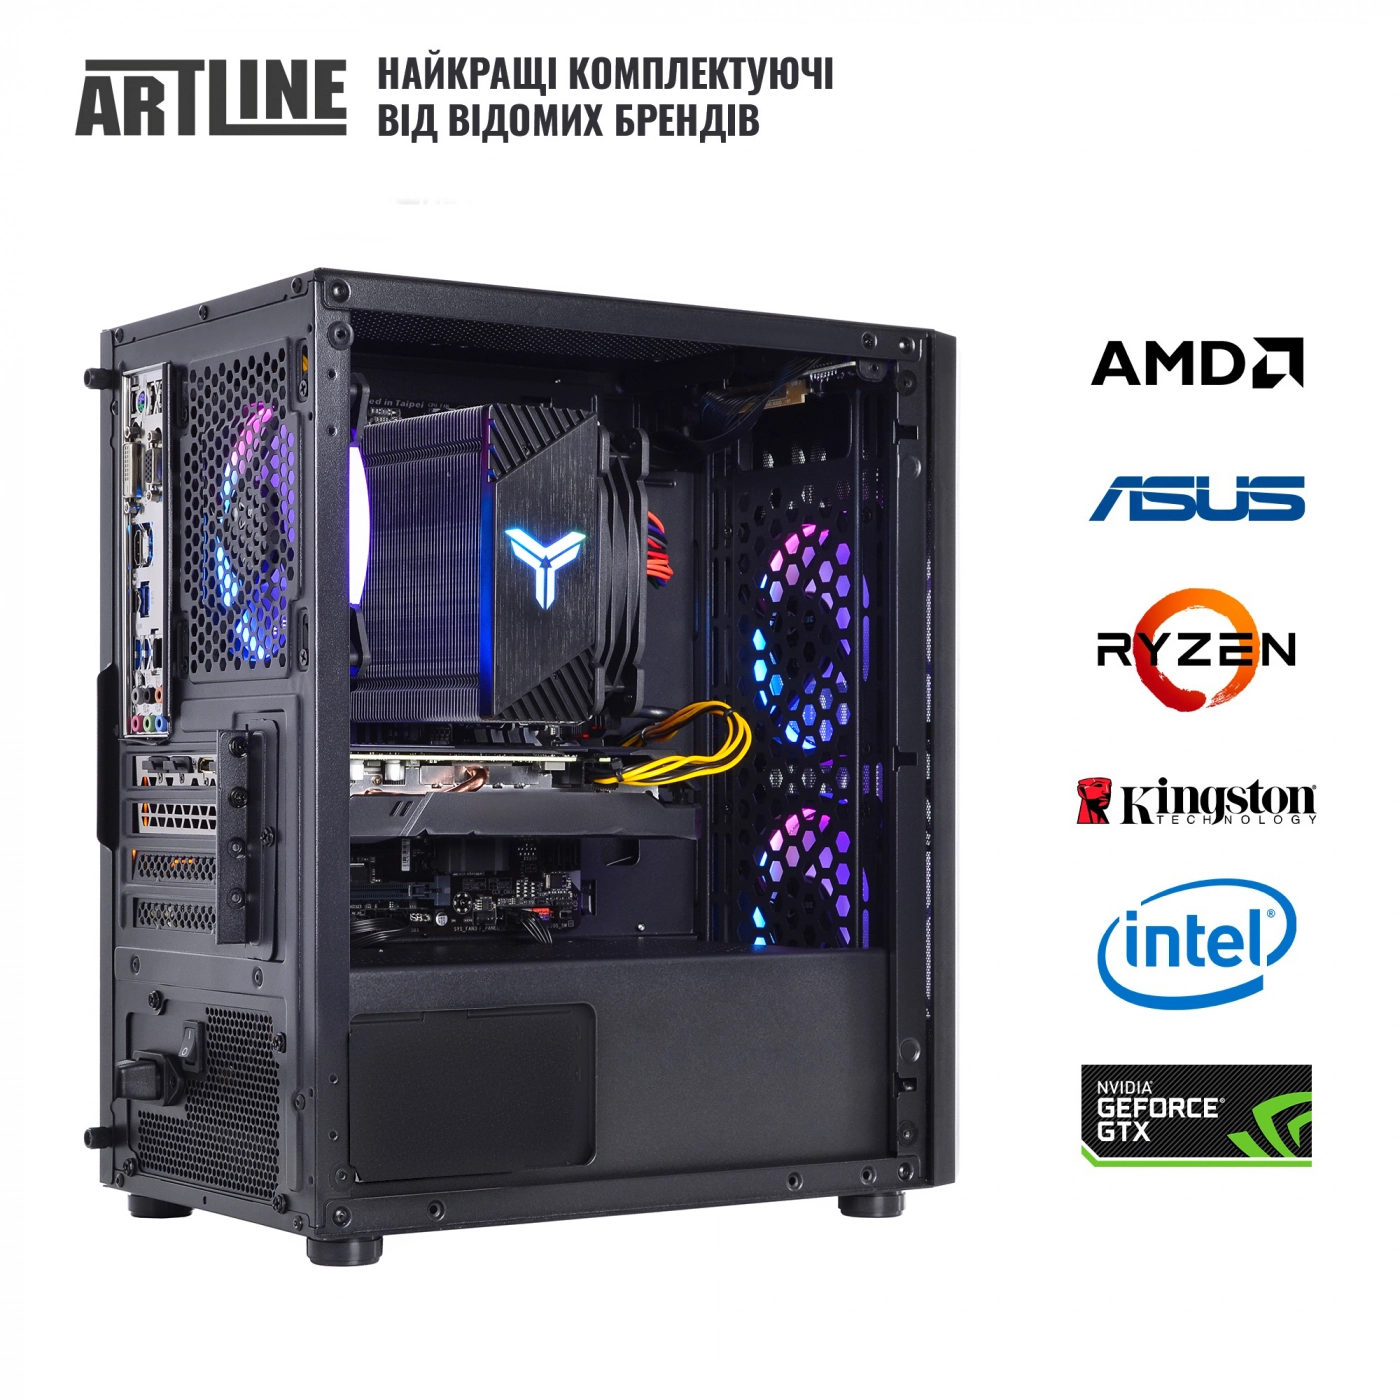 Купить Компьютер ARTLINE Gaming X71v56 - фото 7